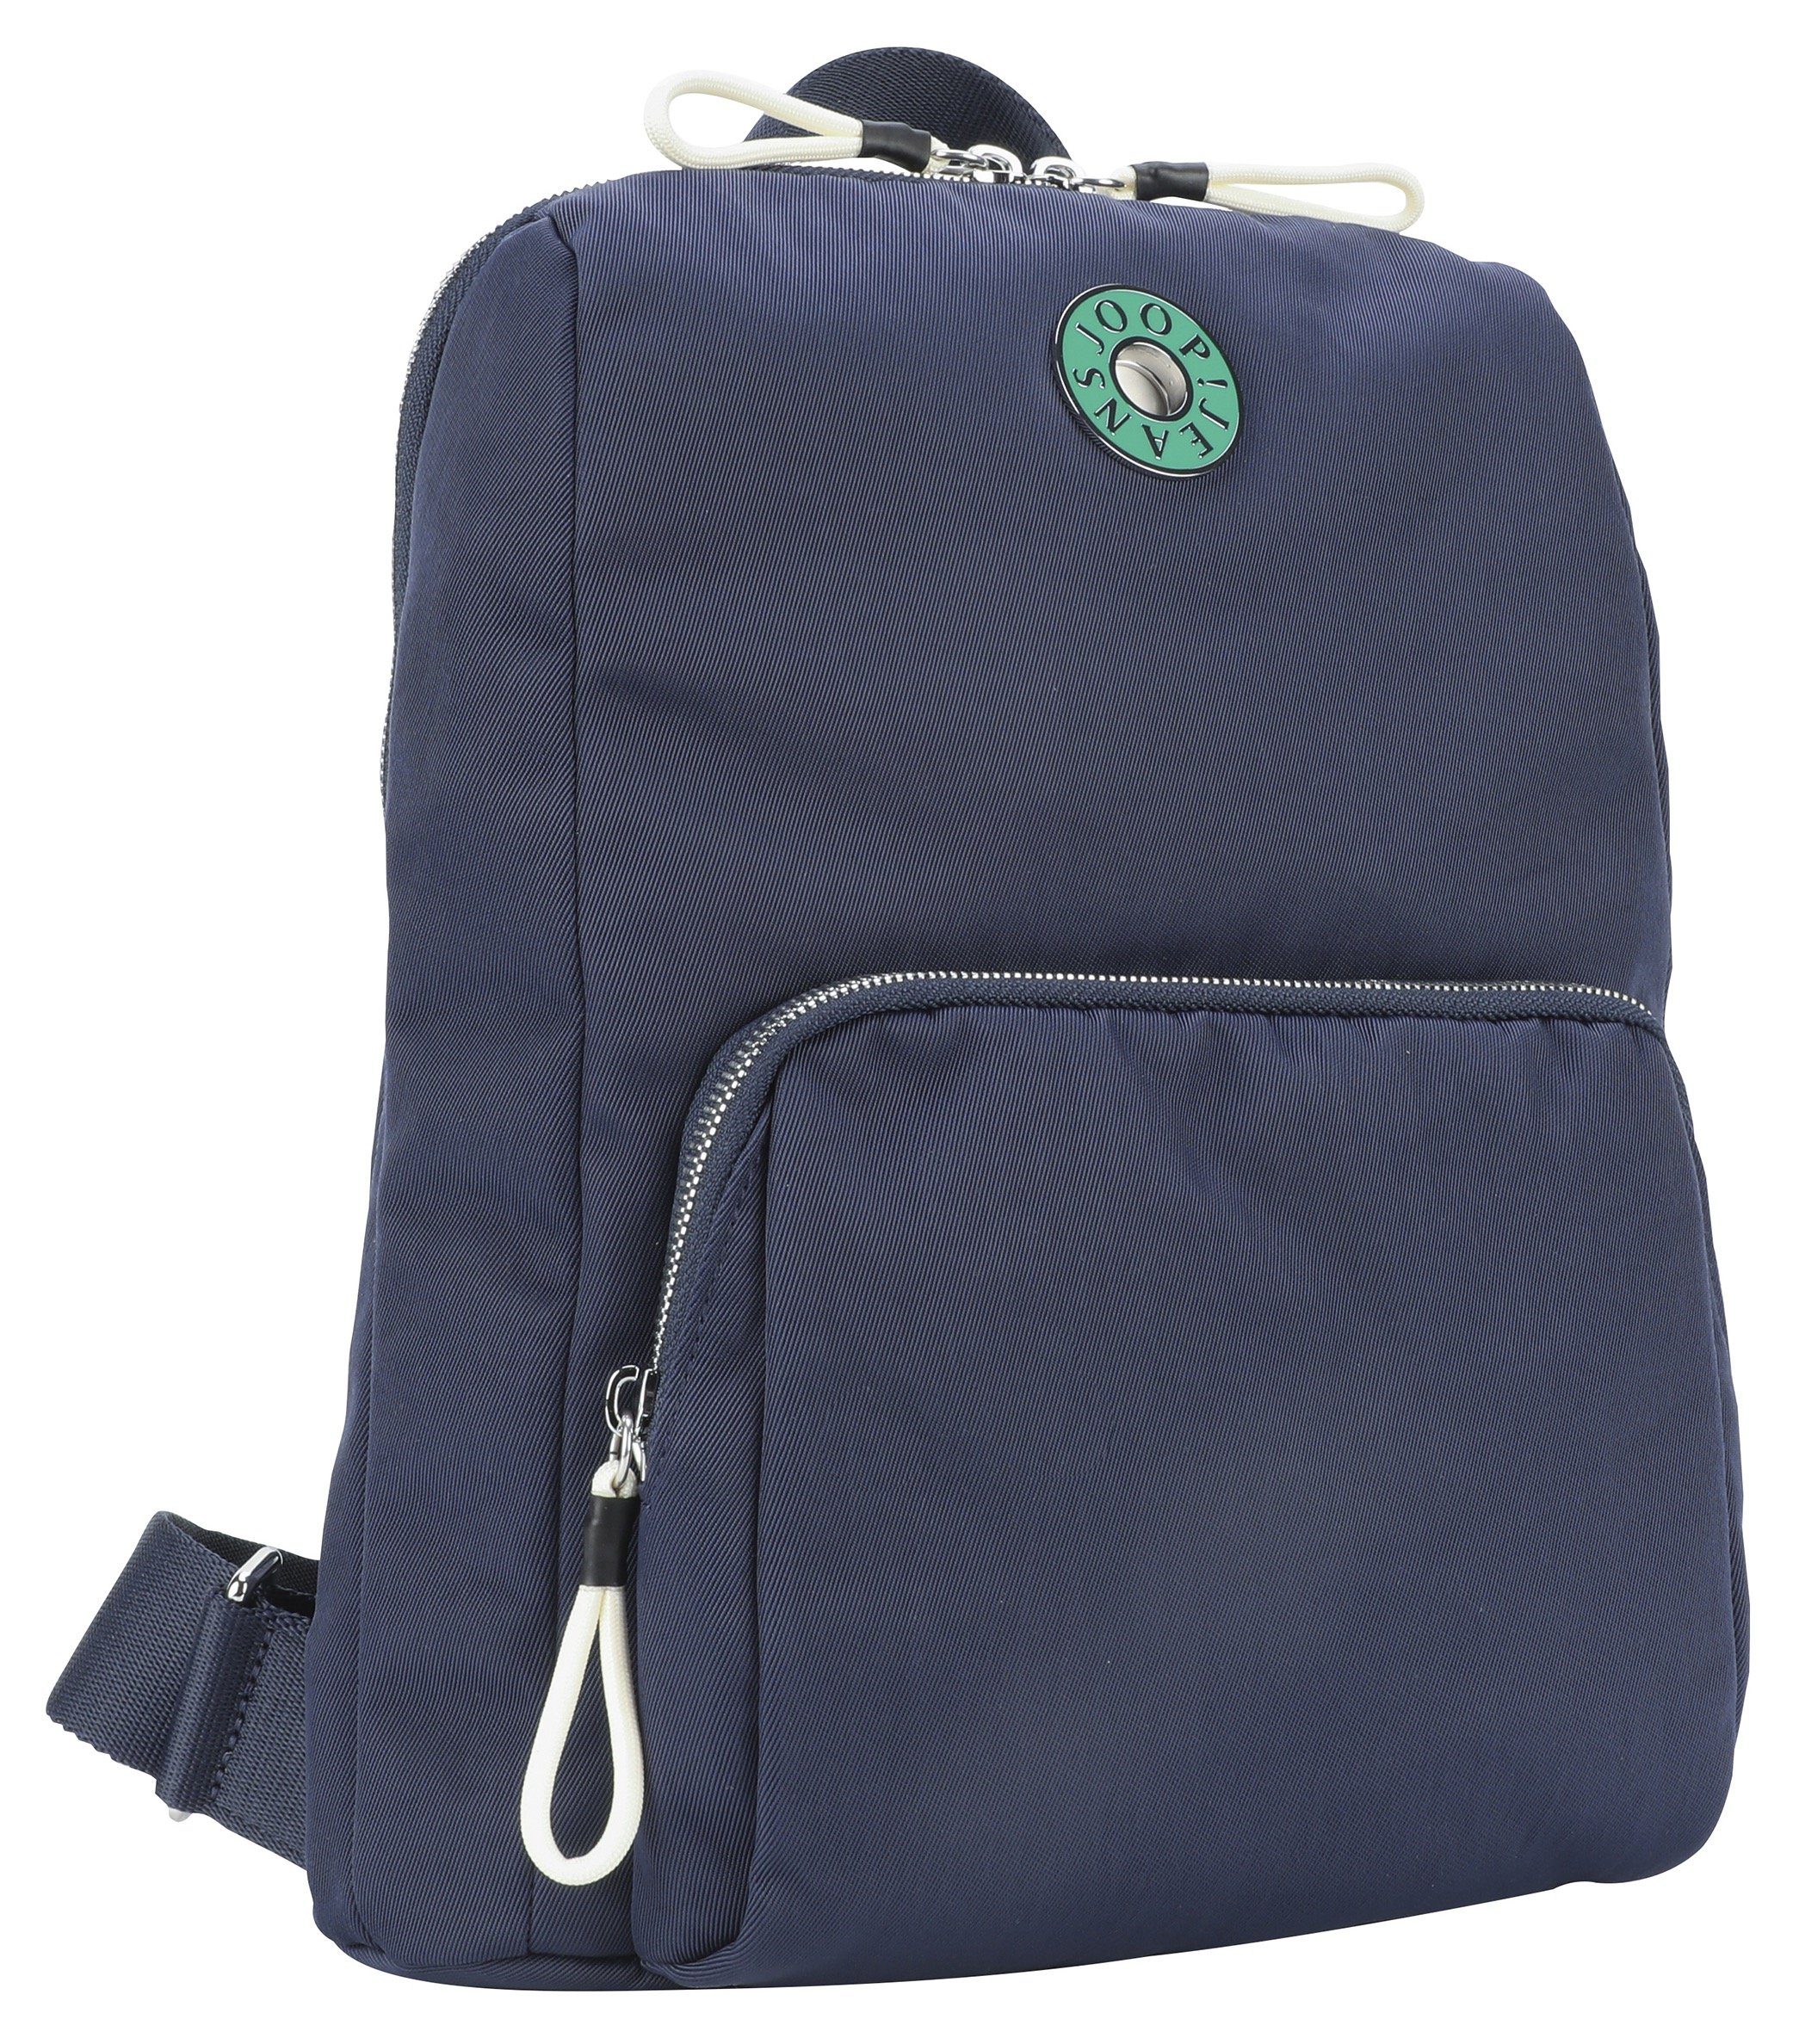 Jeans Joop mvz, im Design giocoso Cityrucksack dunkelblau backpack nivia praktischen